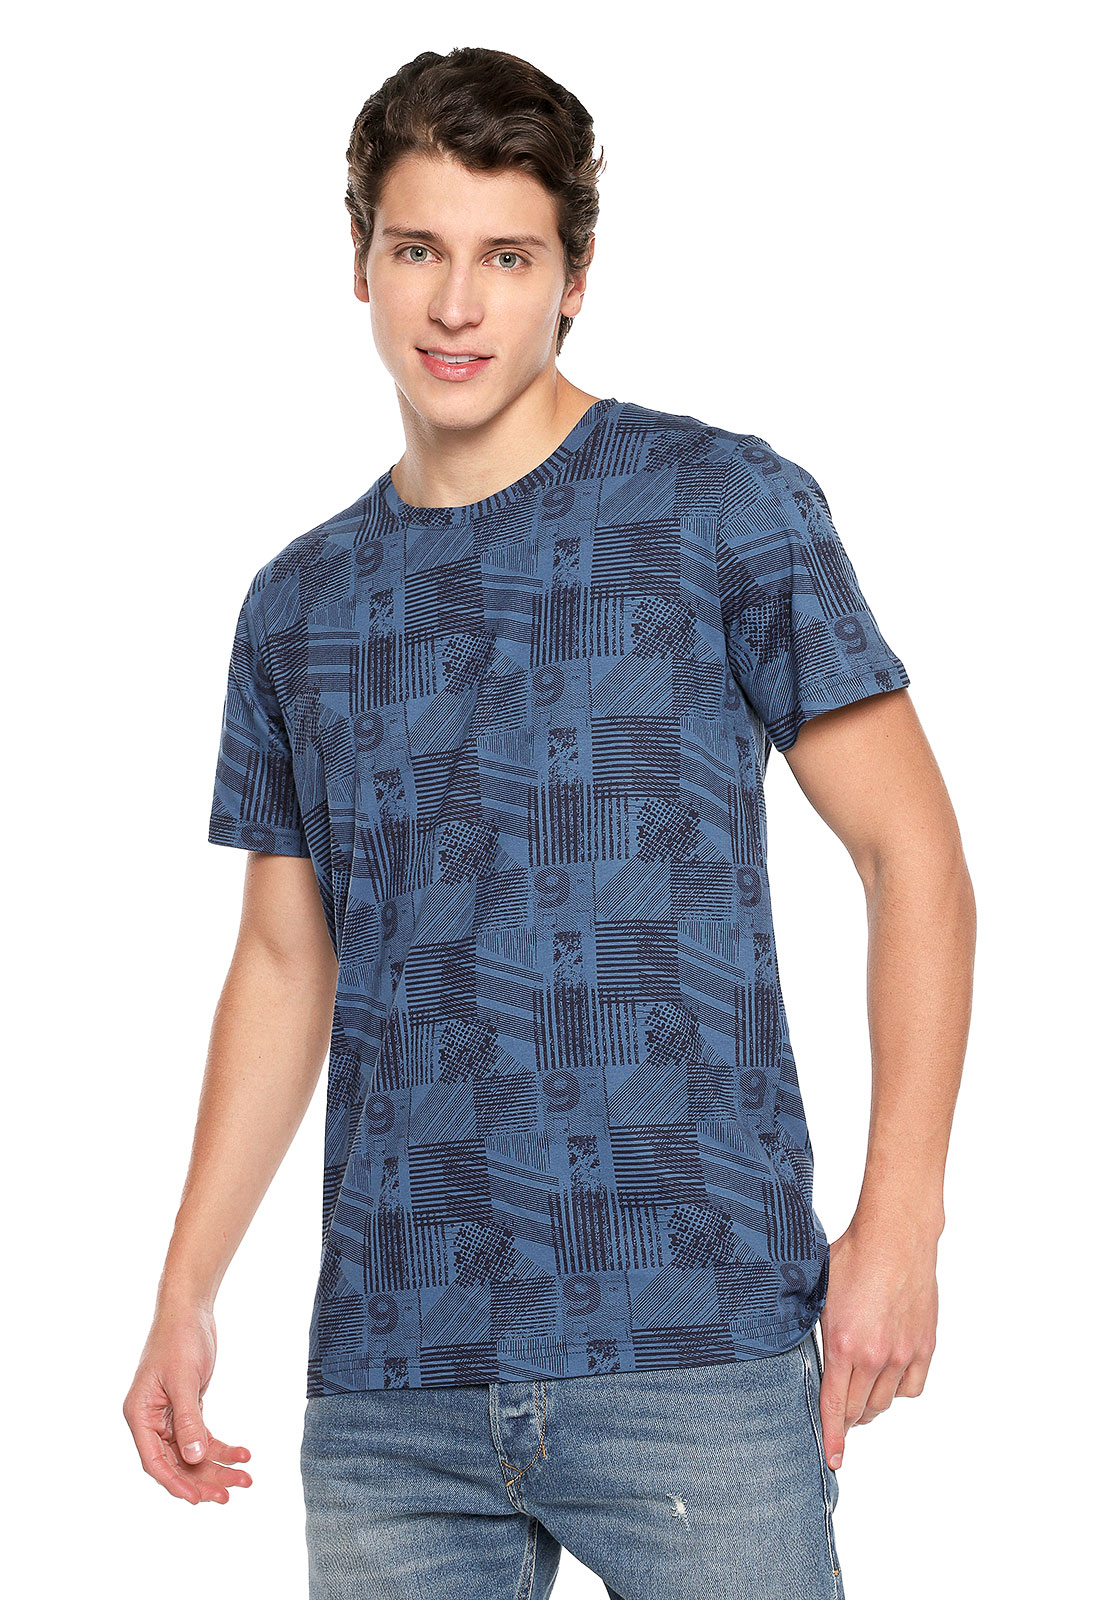 T-shirt para hombre azul con números - Rachid Style